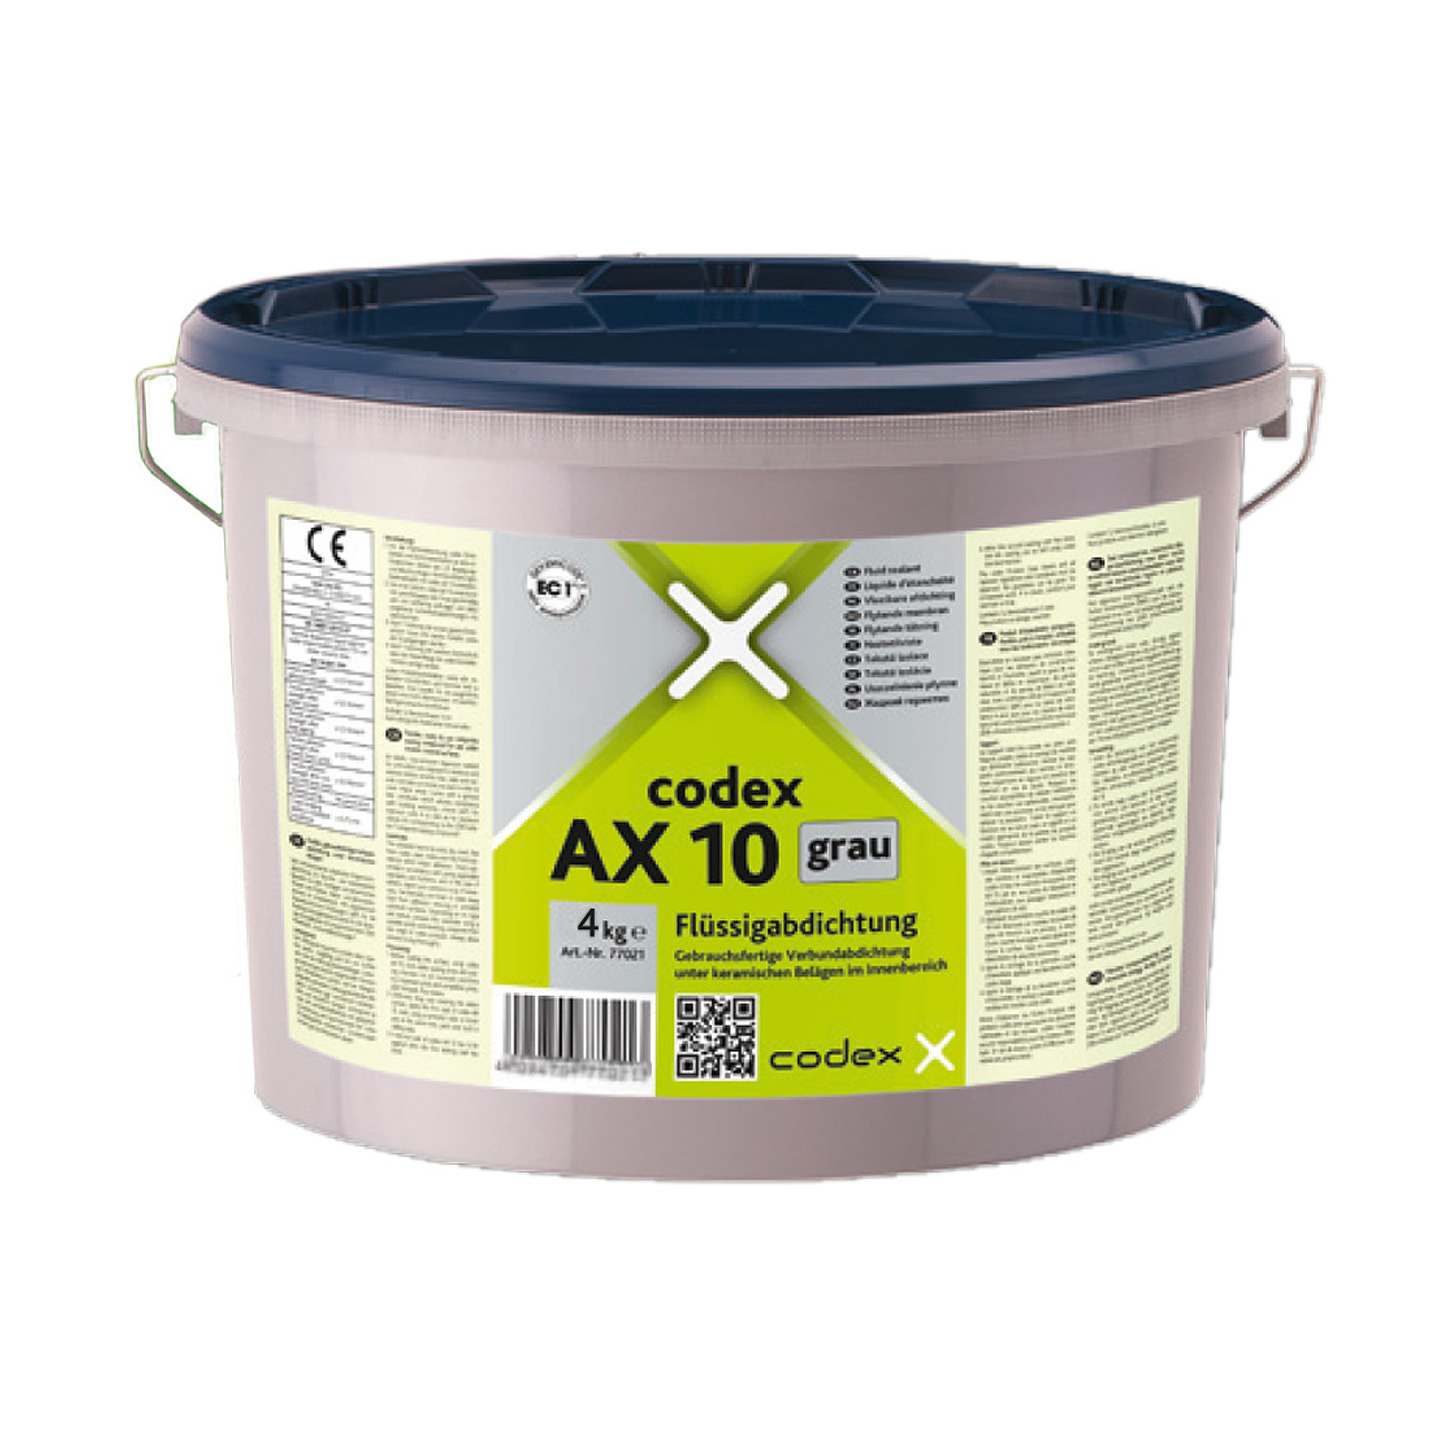 codex AX 10 Flüssigabdichtung grau 4 kg